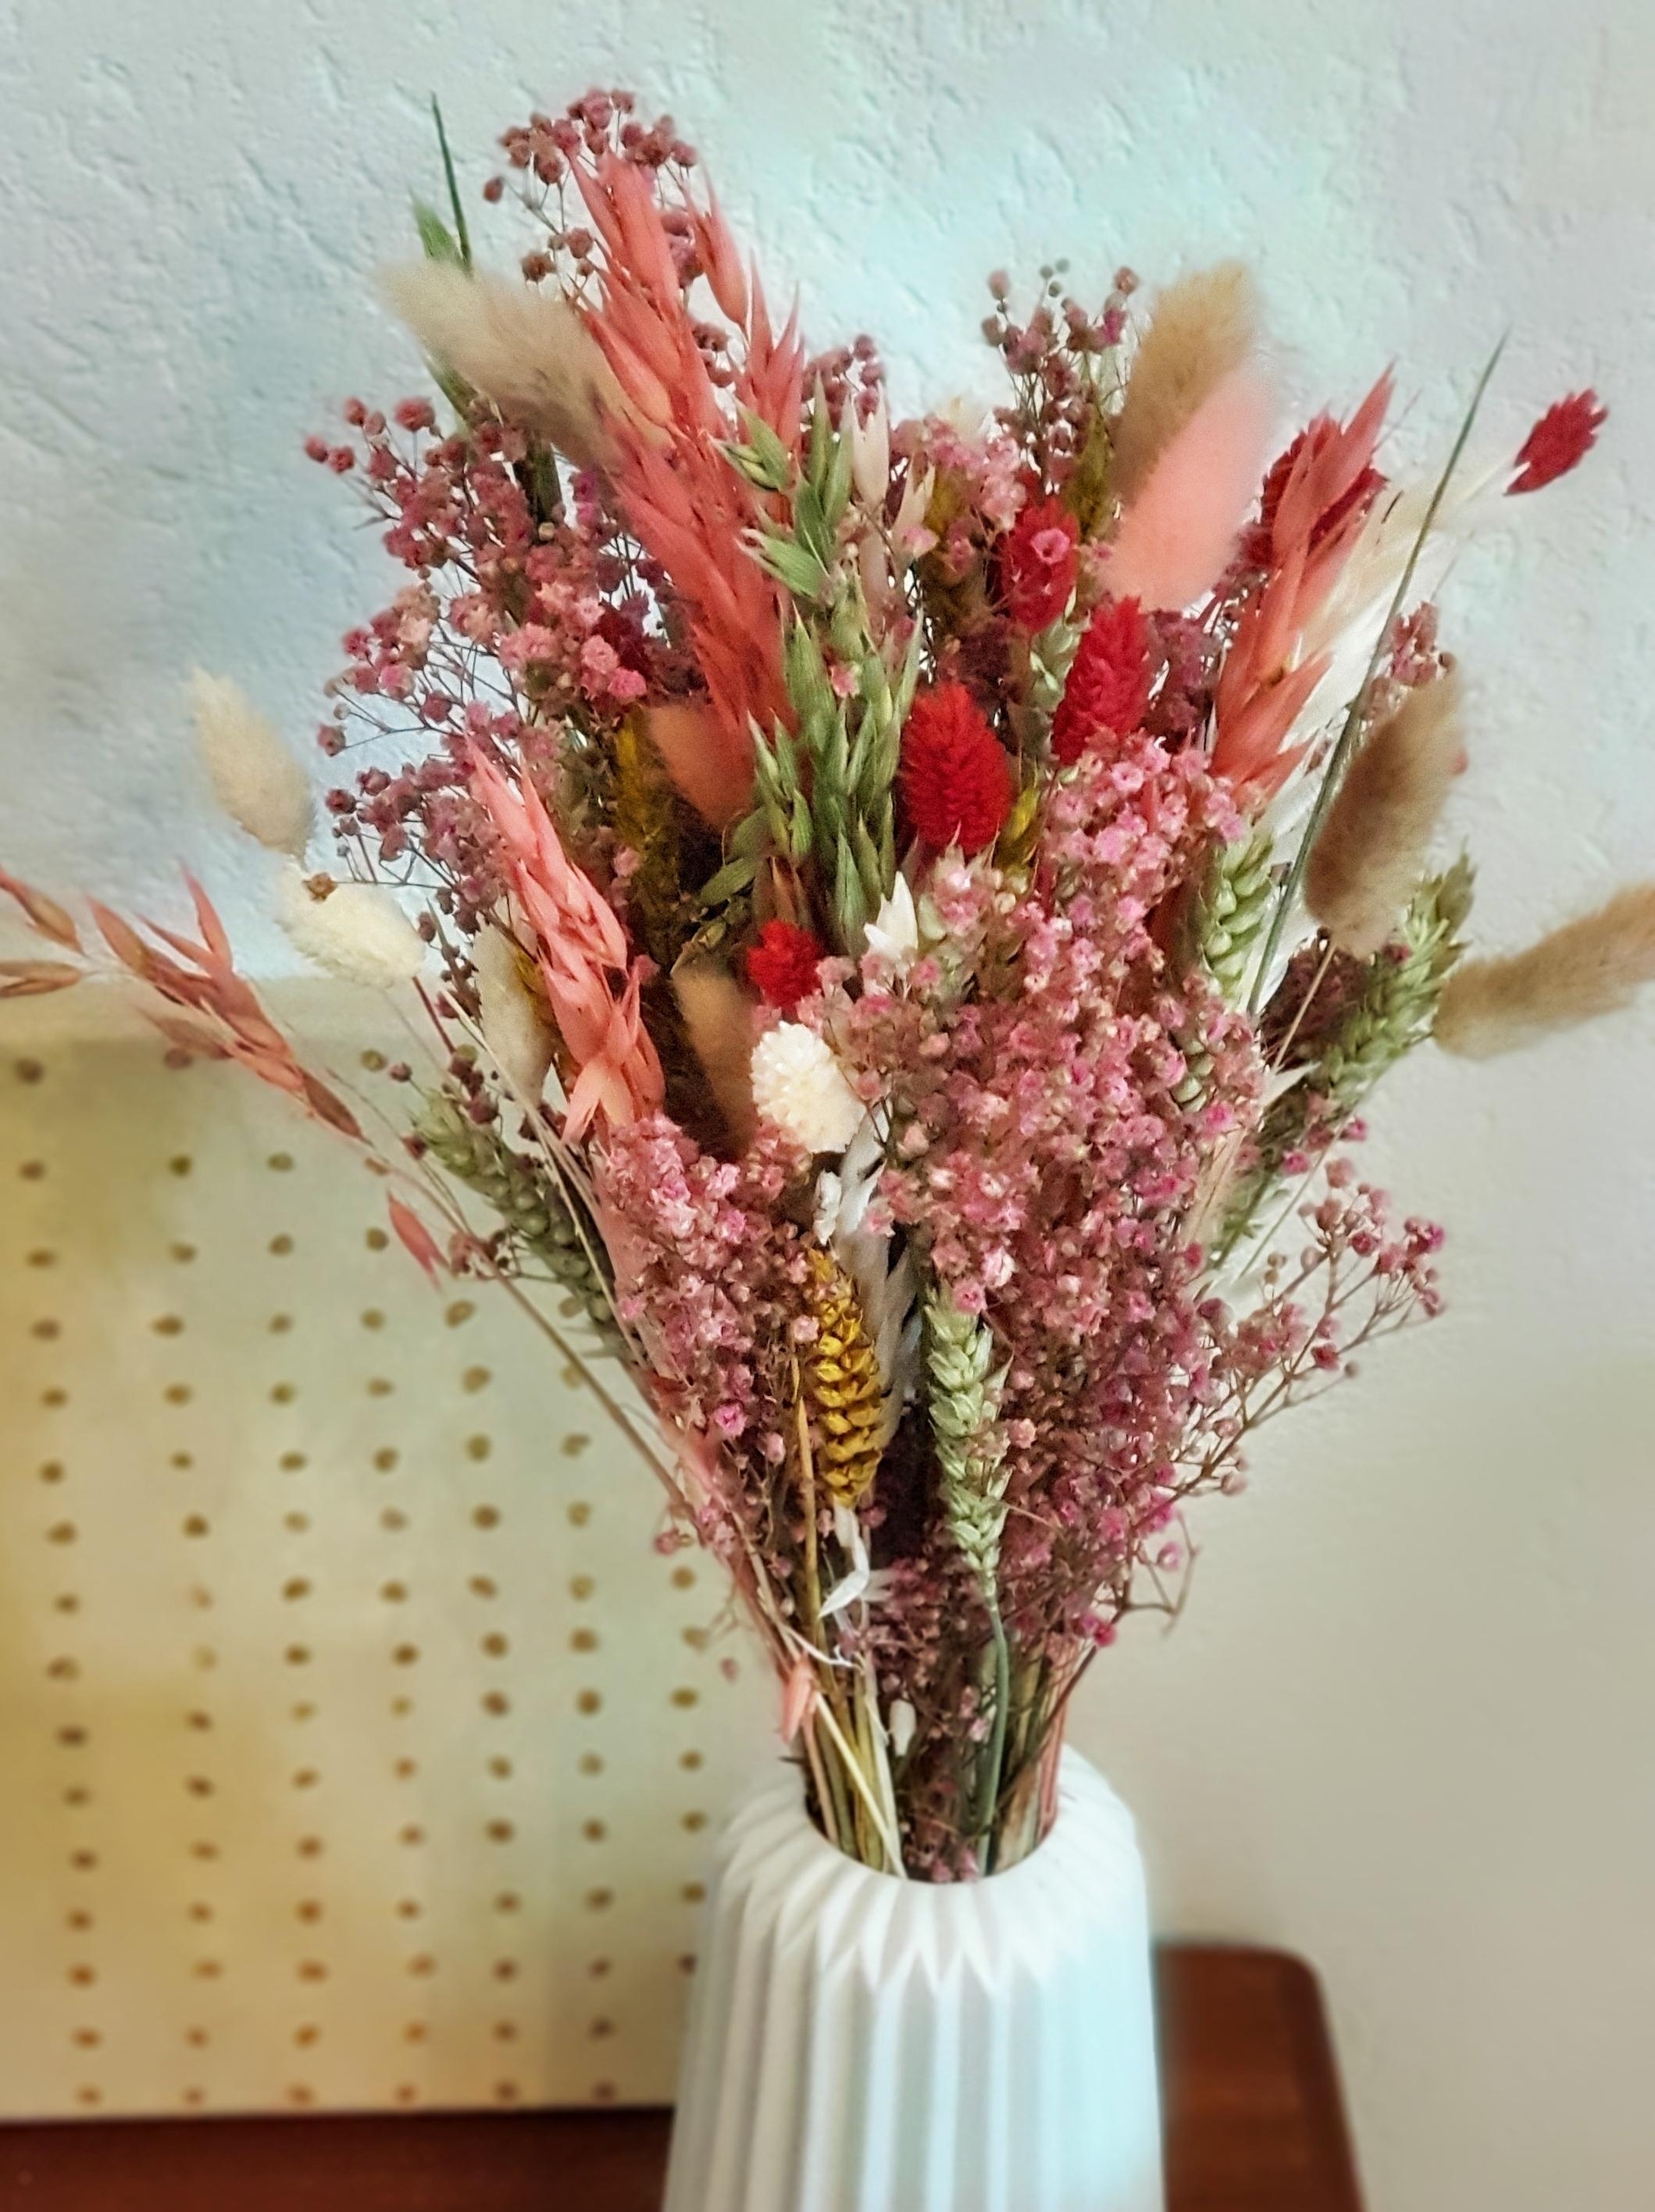 Strohblumen für's Vintage-Frühlingsfeeling
#vintageliving #strohblumen #flowerpower #anniewohntvintage